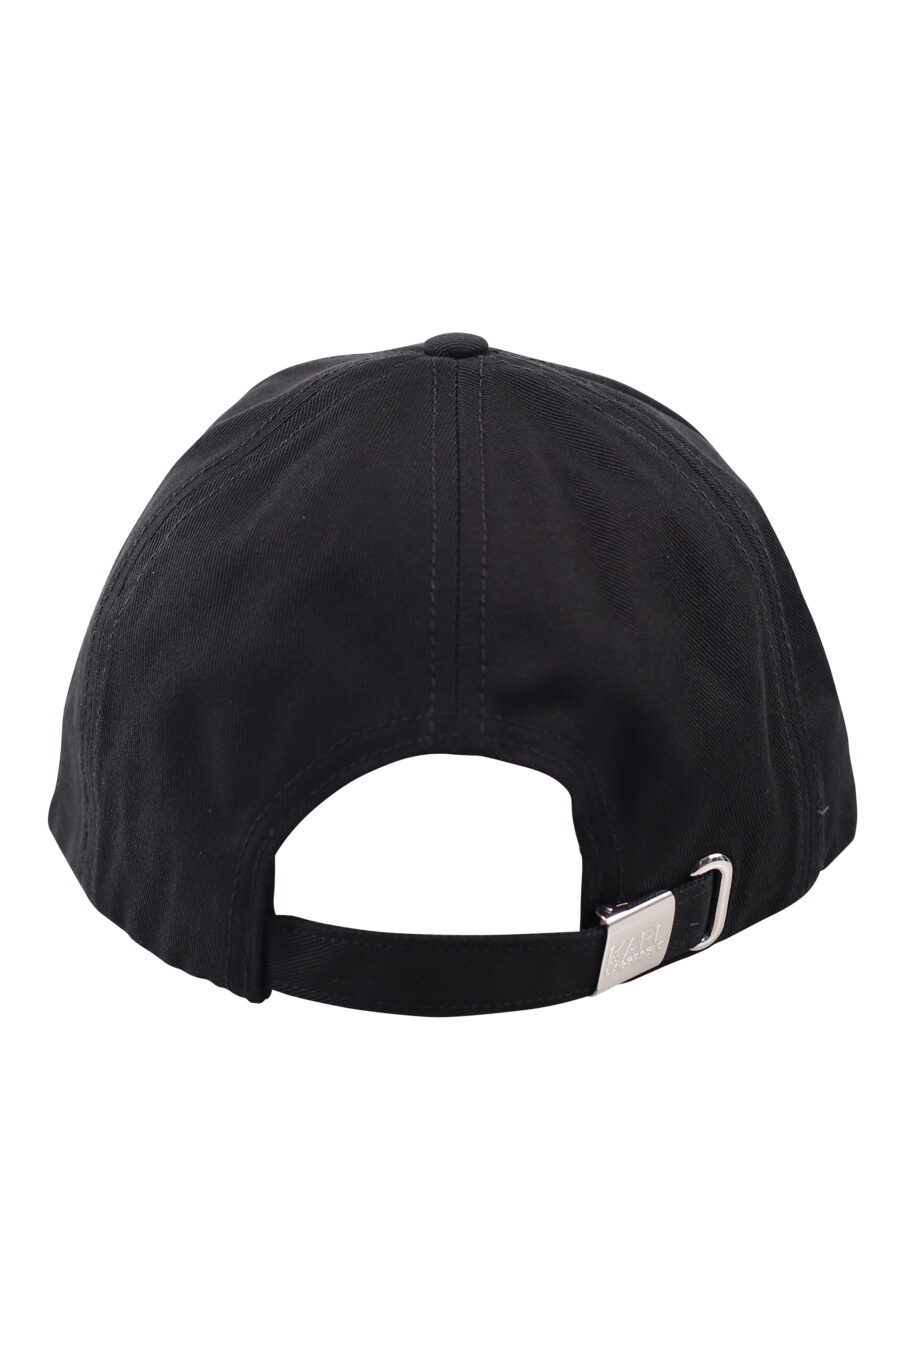 Gorra negra con logo blanco - IMG 1824